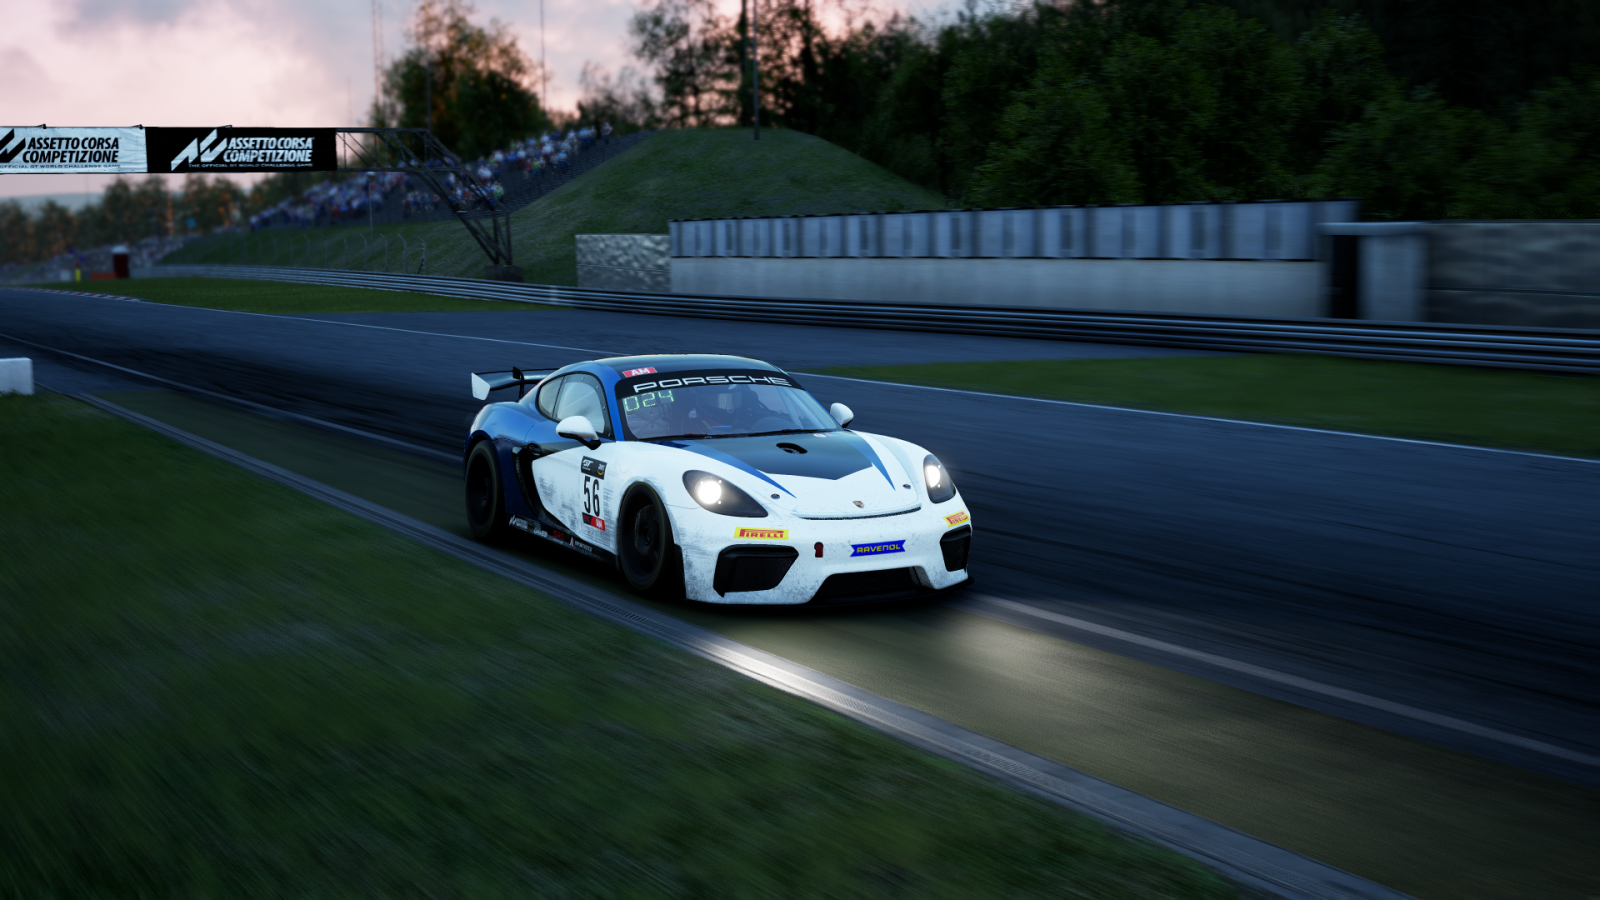 Cavillion, Porsche Bring Home GT4 Class Win